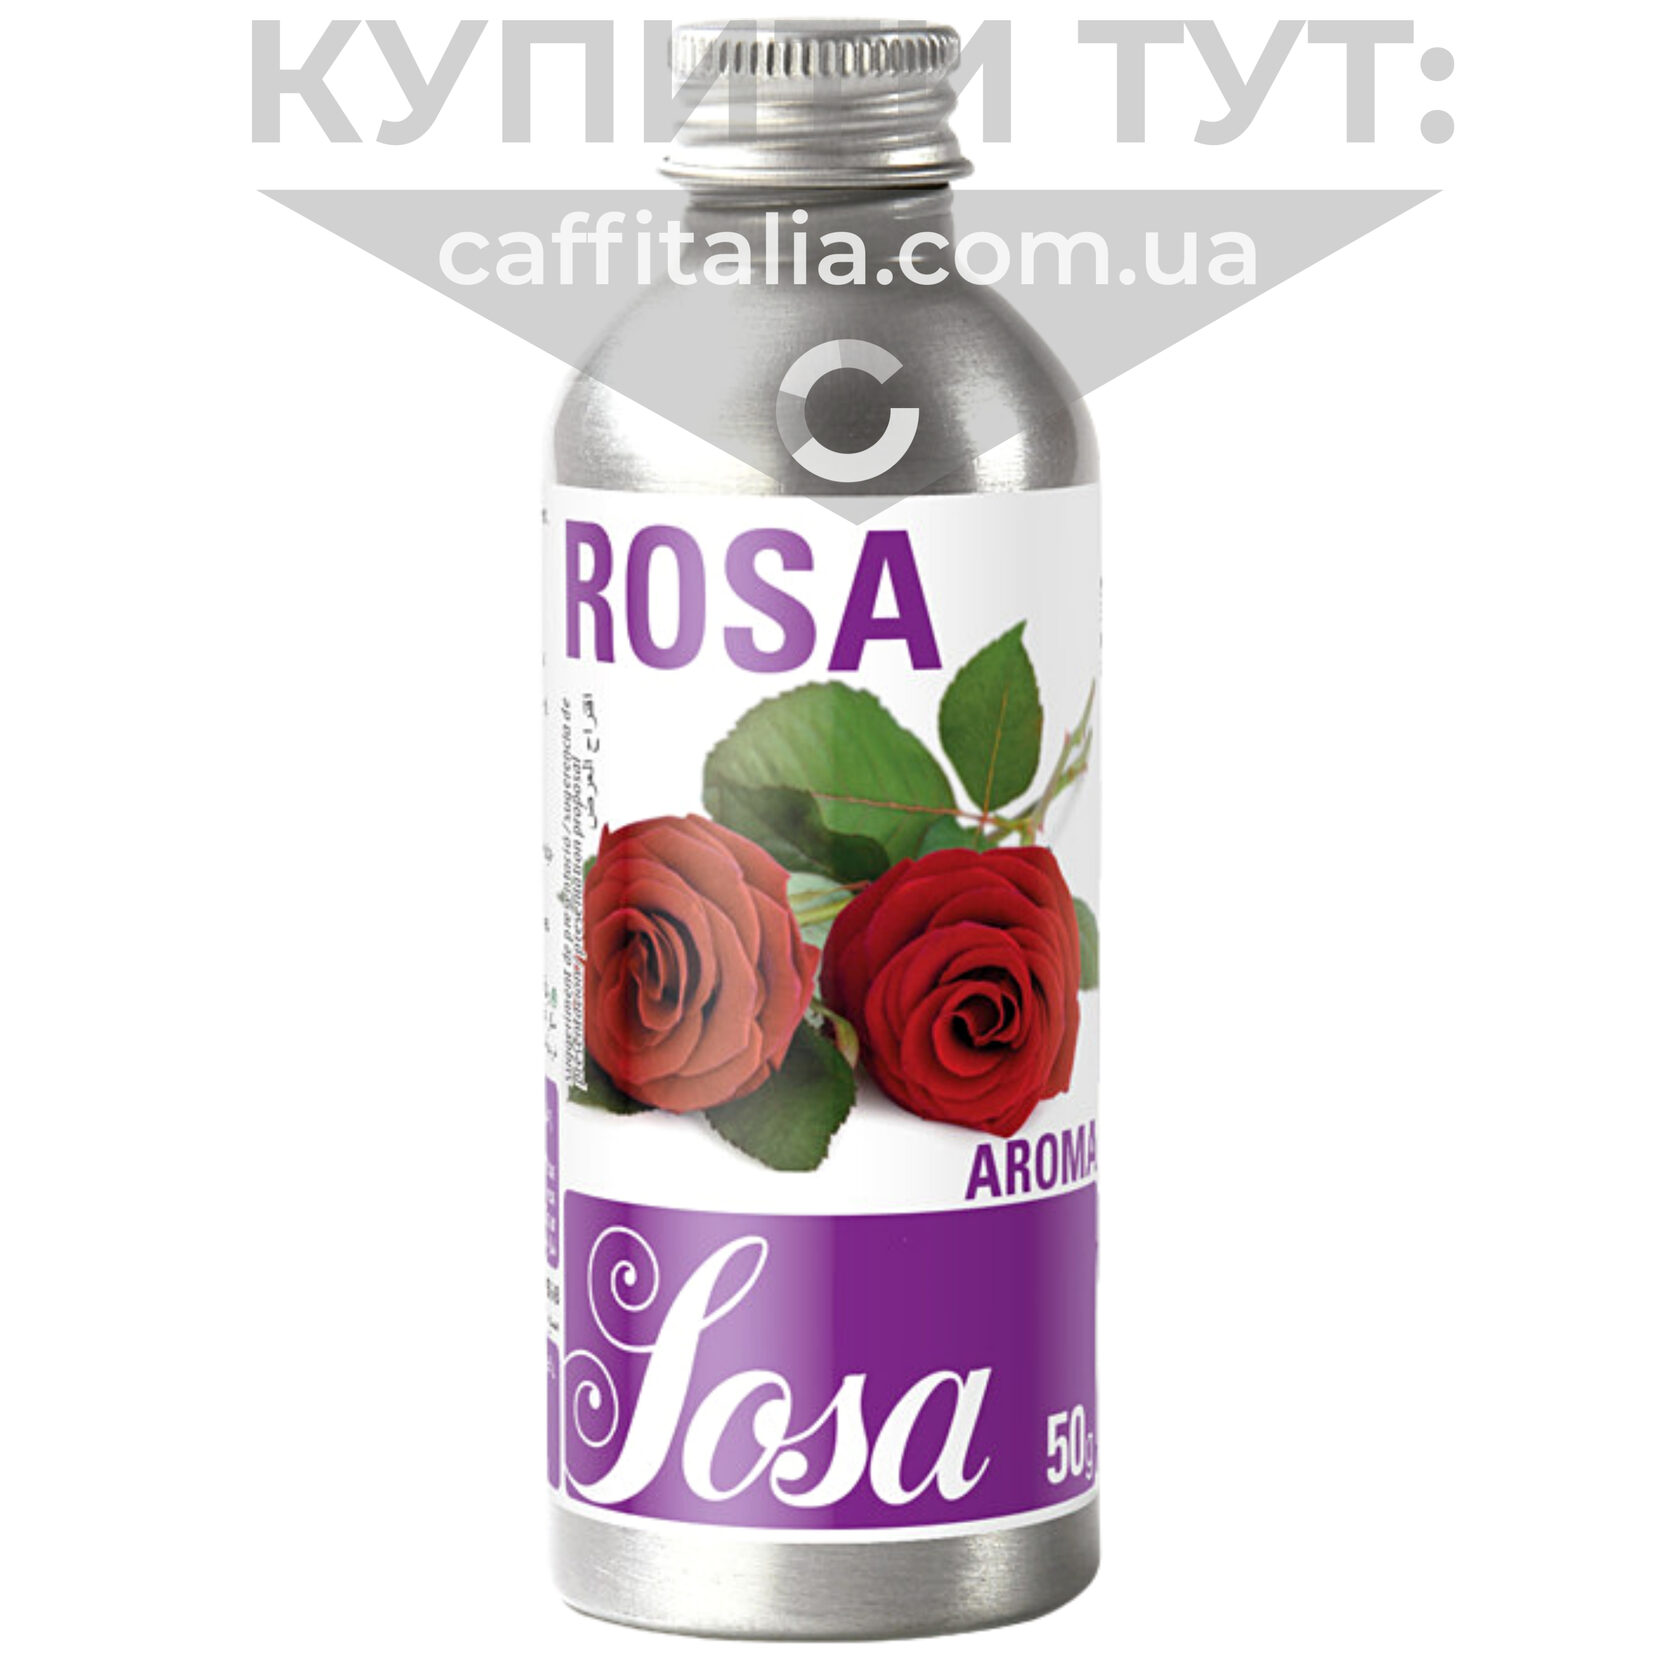 Rosa_flavors